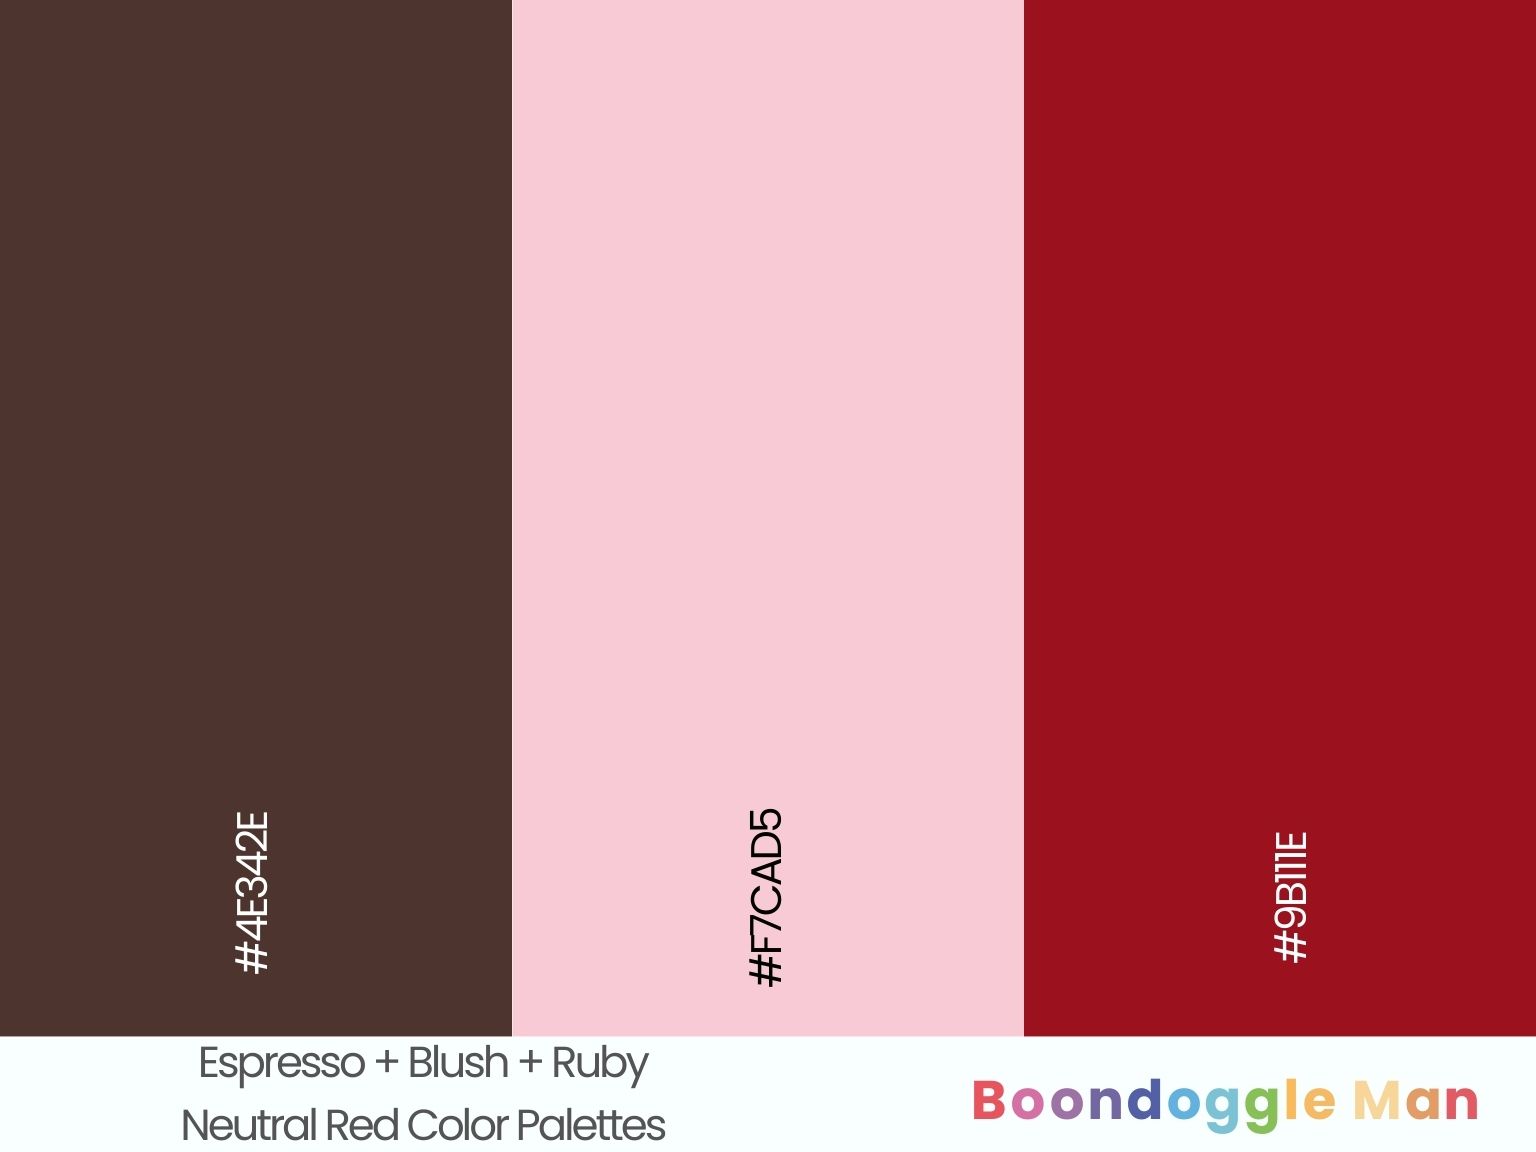 Espresso + Blush + Ruby